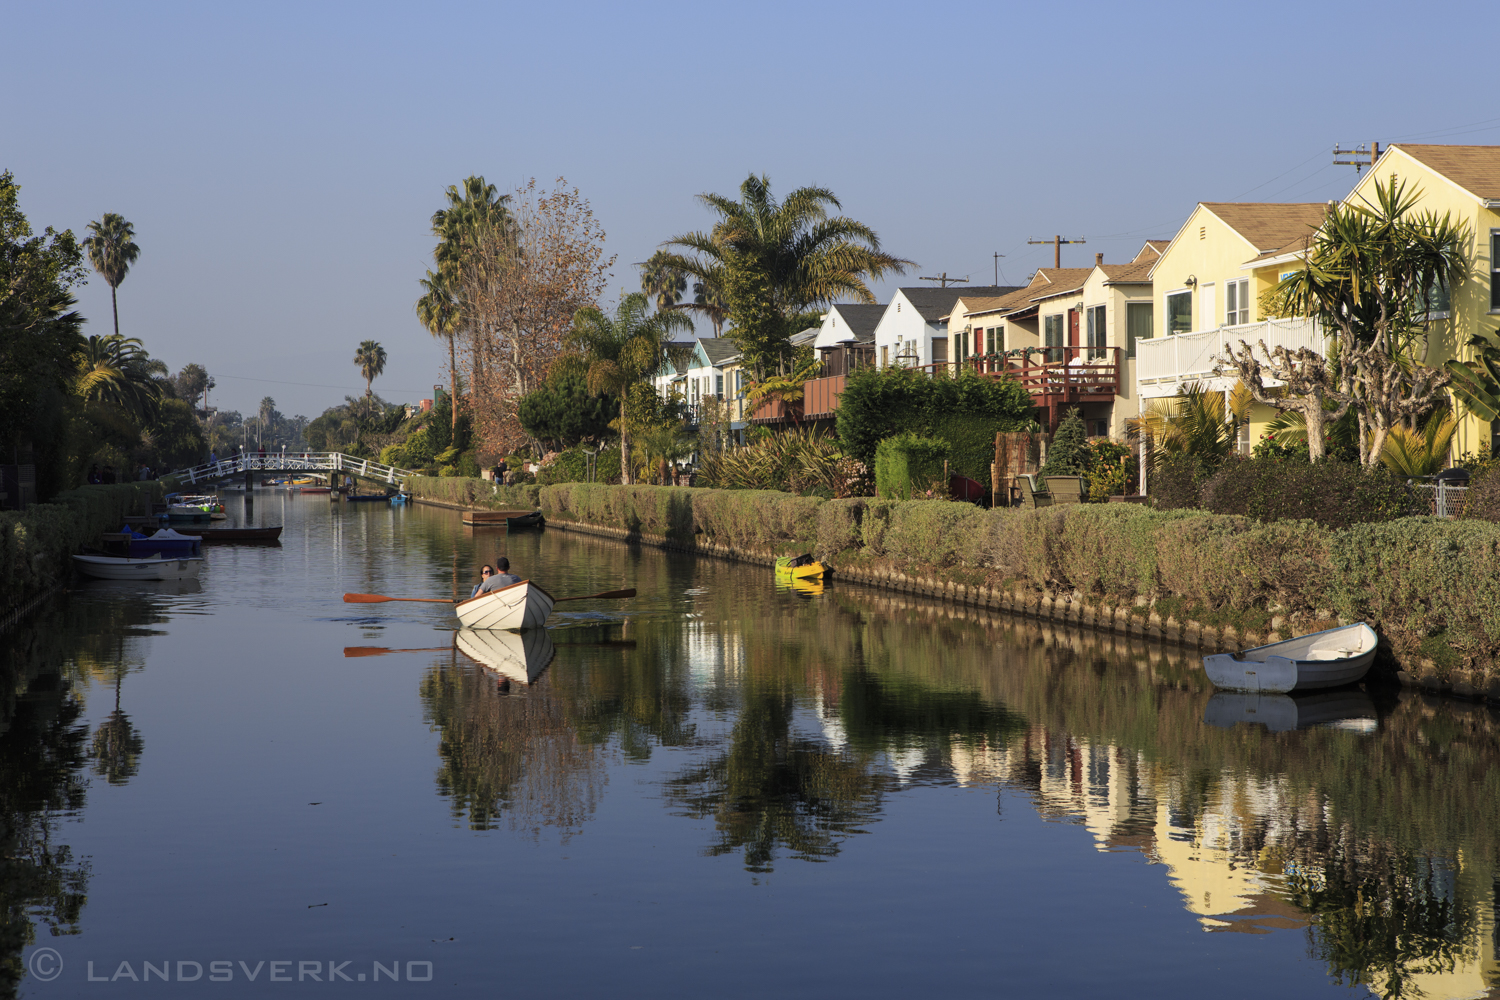 Venice, Los Angeles, California.

(Canon EOS 5D Mark III / Canon EF 24-70mm f/2.8 L USM)